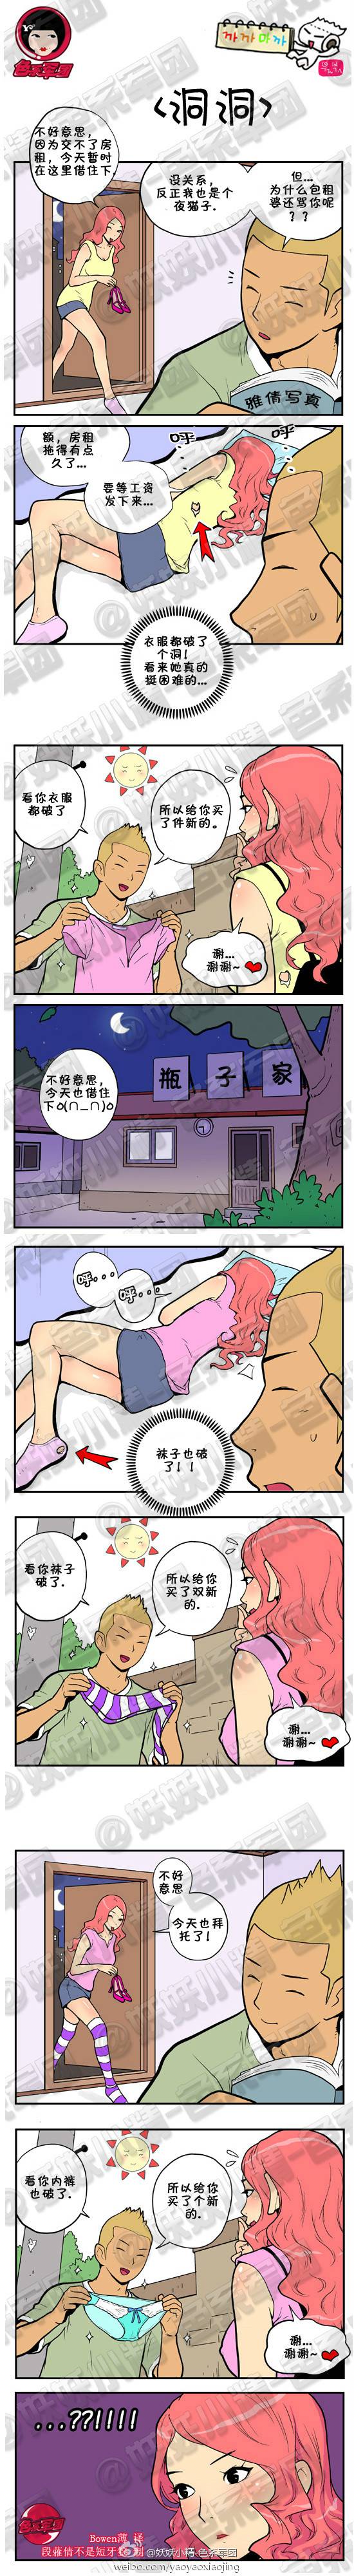 邪恶漫画爆笑囧图第269刊：新睡美人的故事